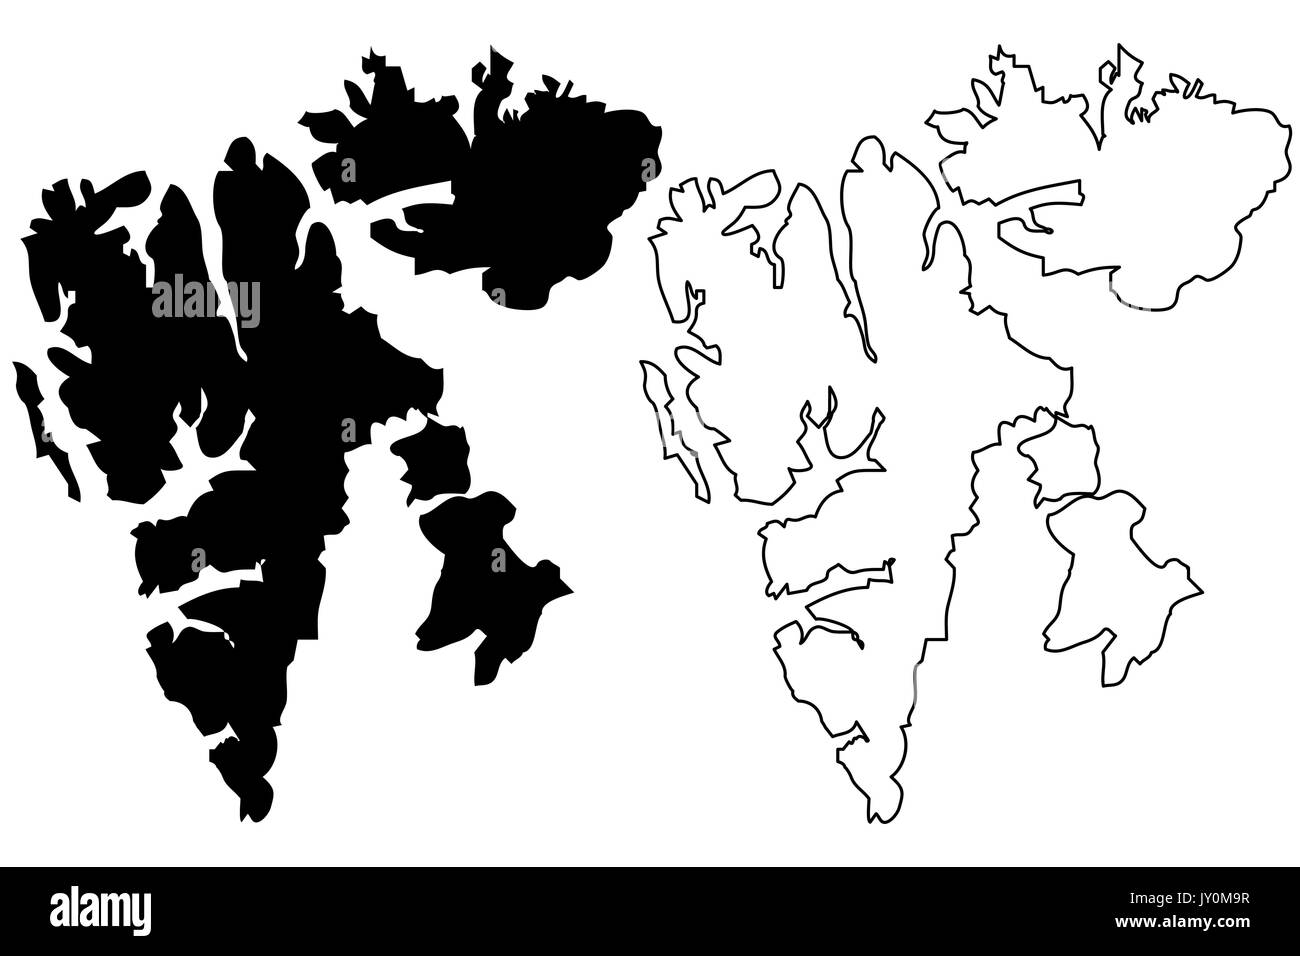 Svalbard karte Vektor-illustration, kritzeln Skizze Spitzbergen Inseln Stock Vektor